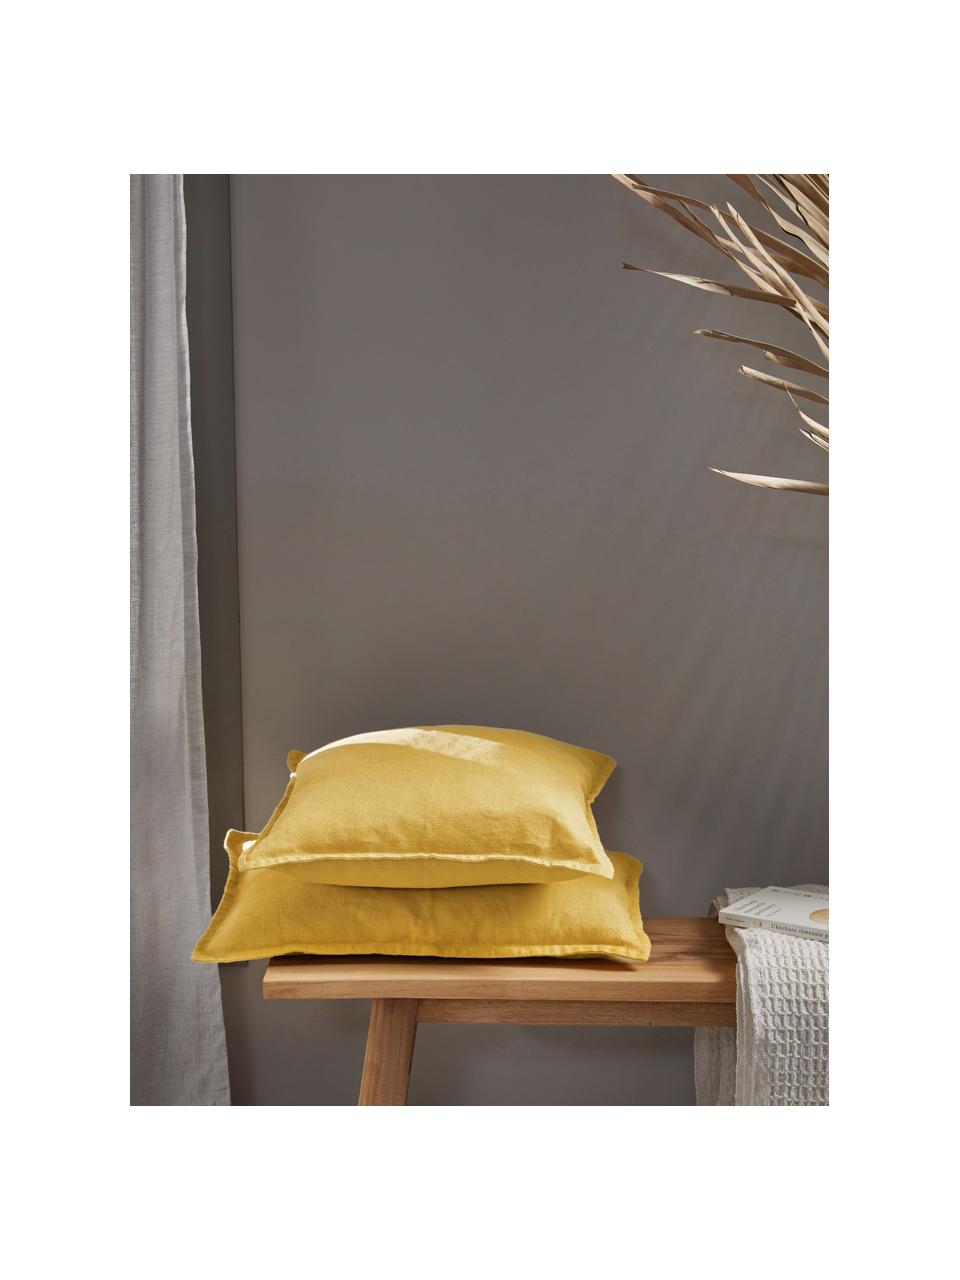 Poszewka na poduszkę z lnu Lanya, 100% len, Żółty, S 50 x D 50 cm